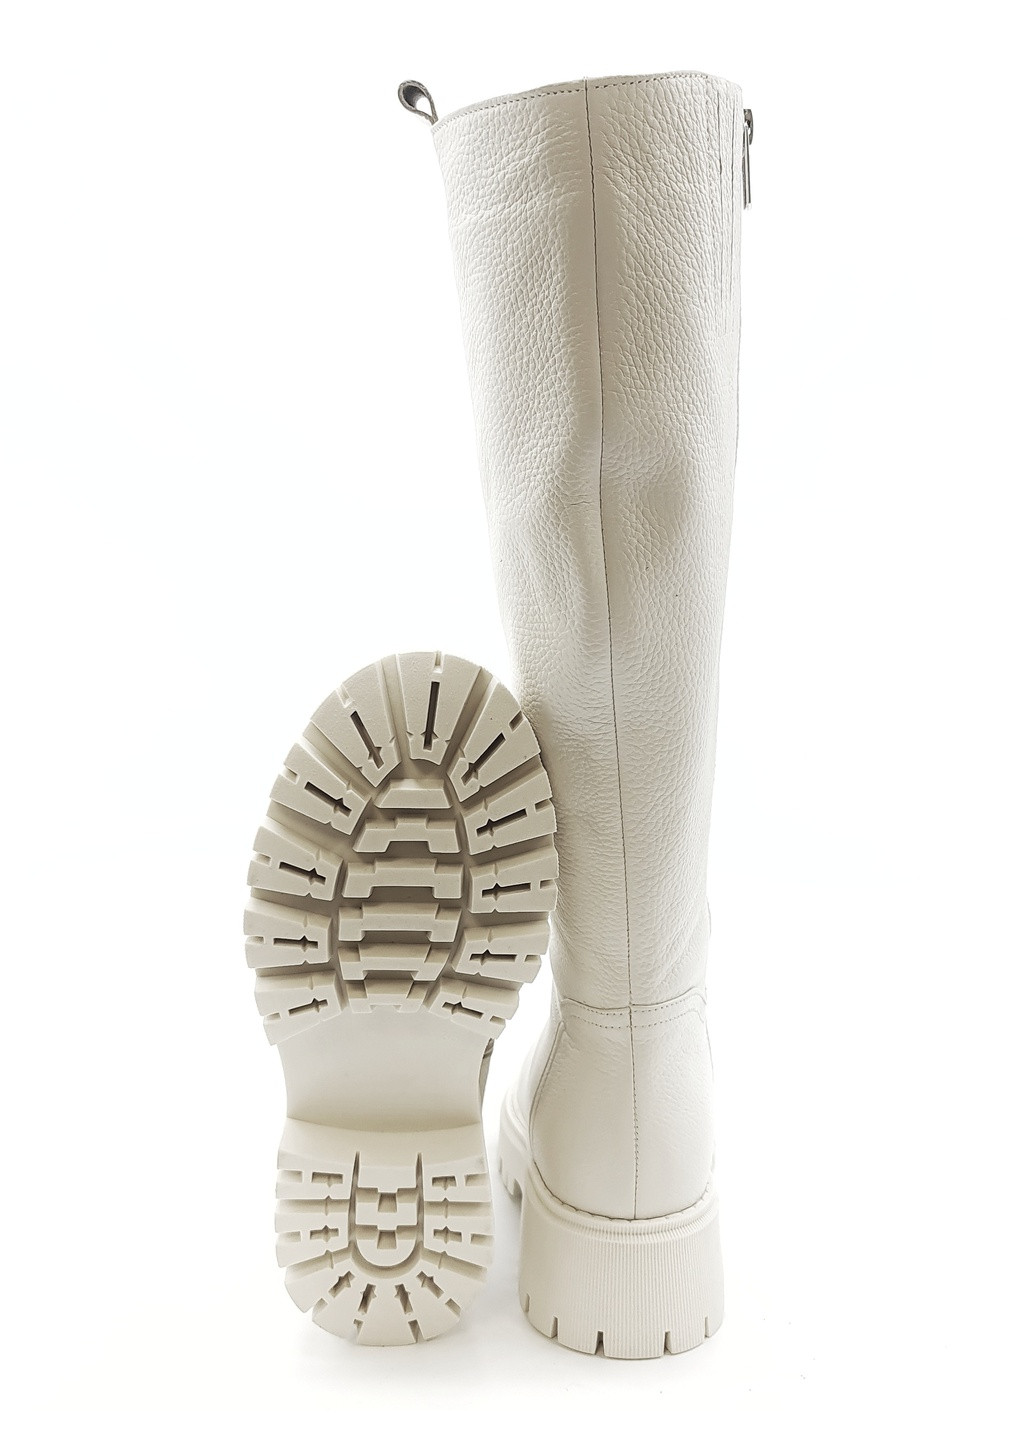 Жіночі чоботи єврозима молочні шкіряні MR-17-1 24,5 см (р) Morento (259301288)